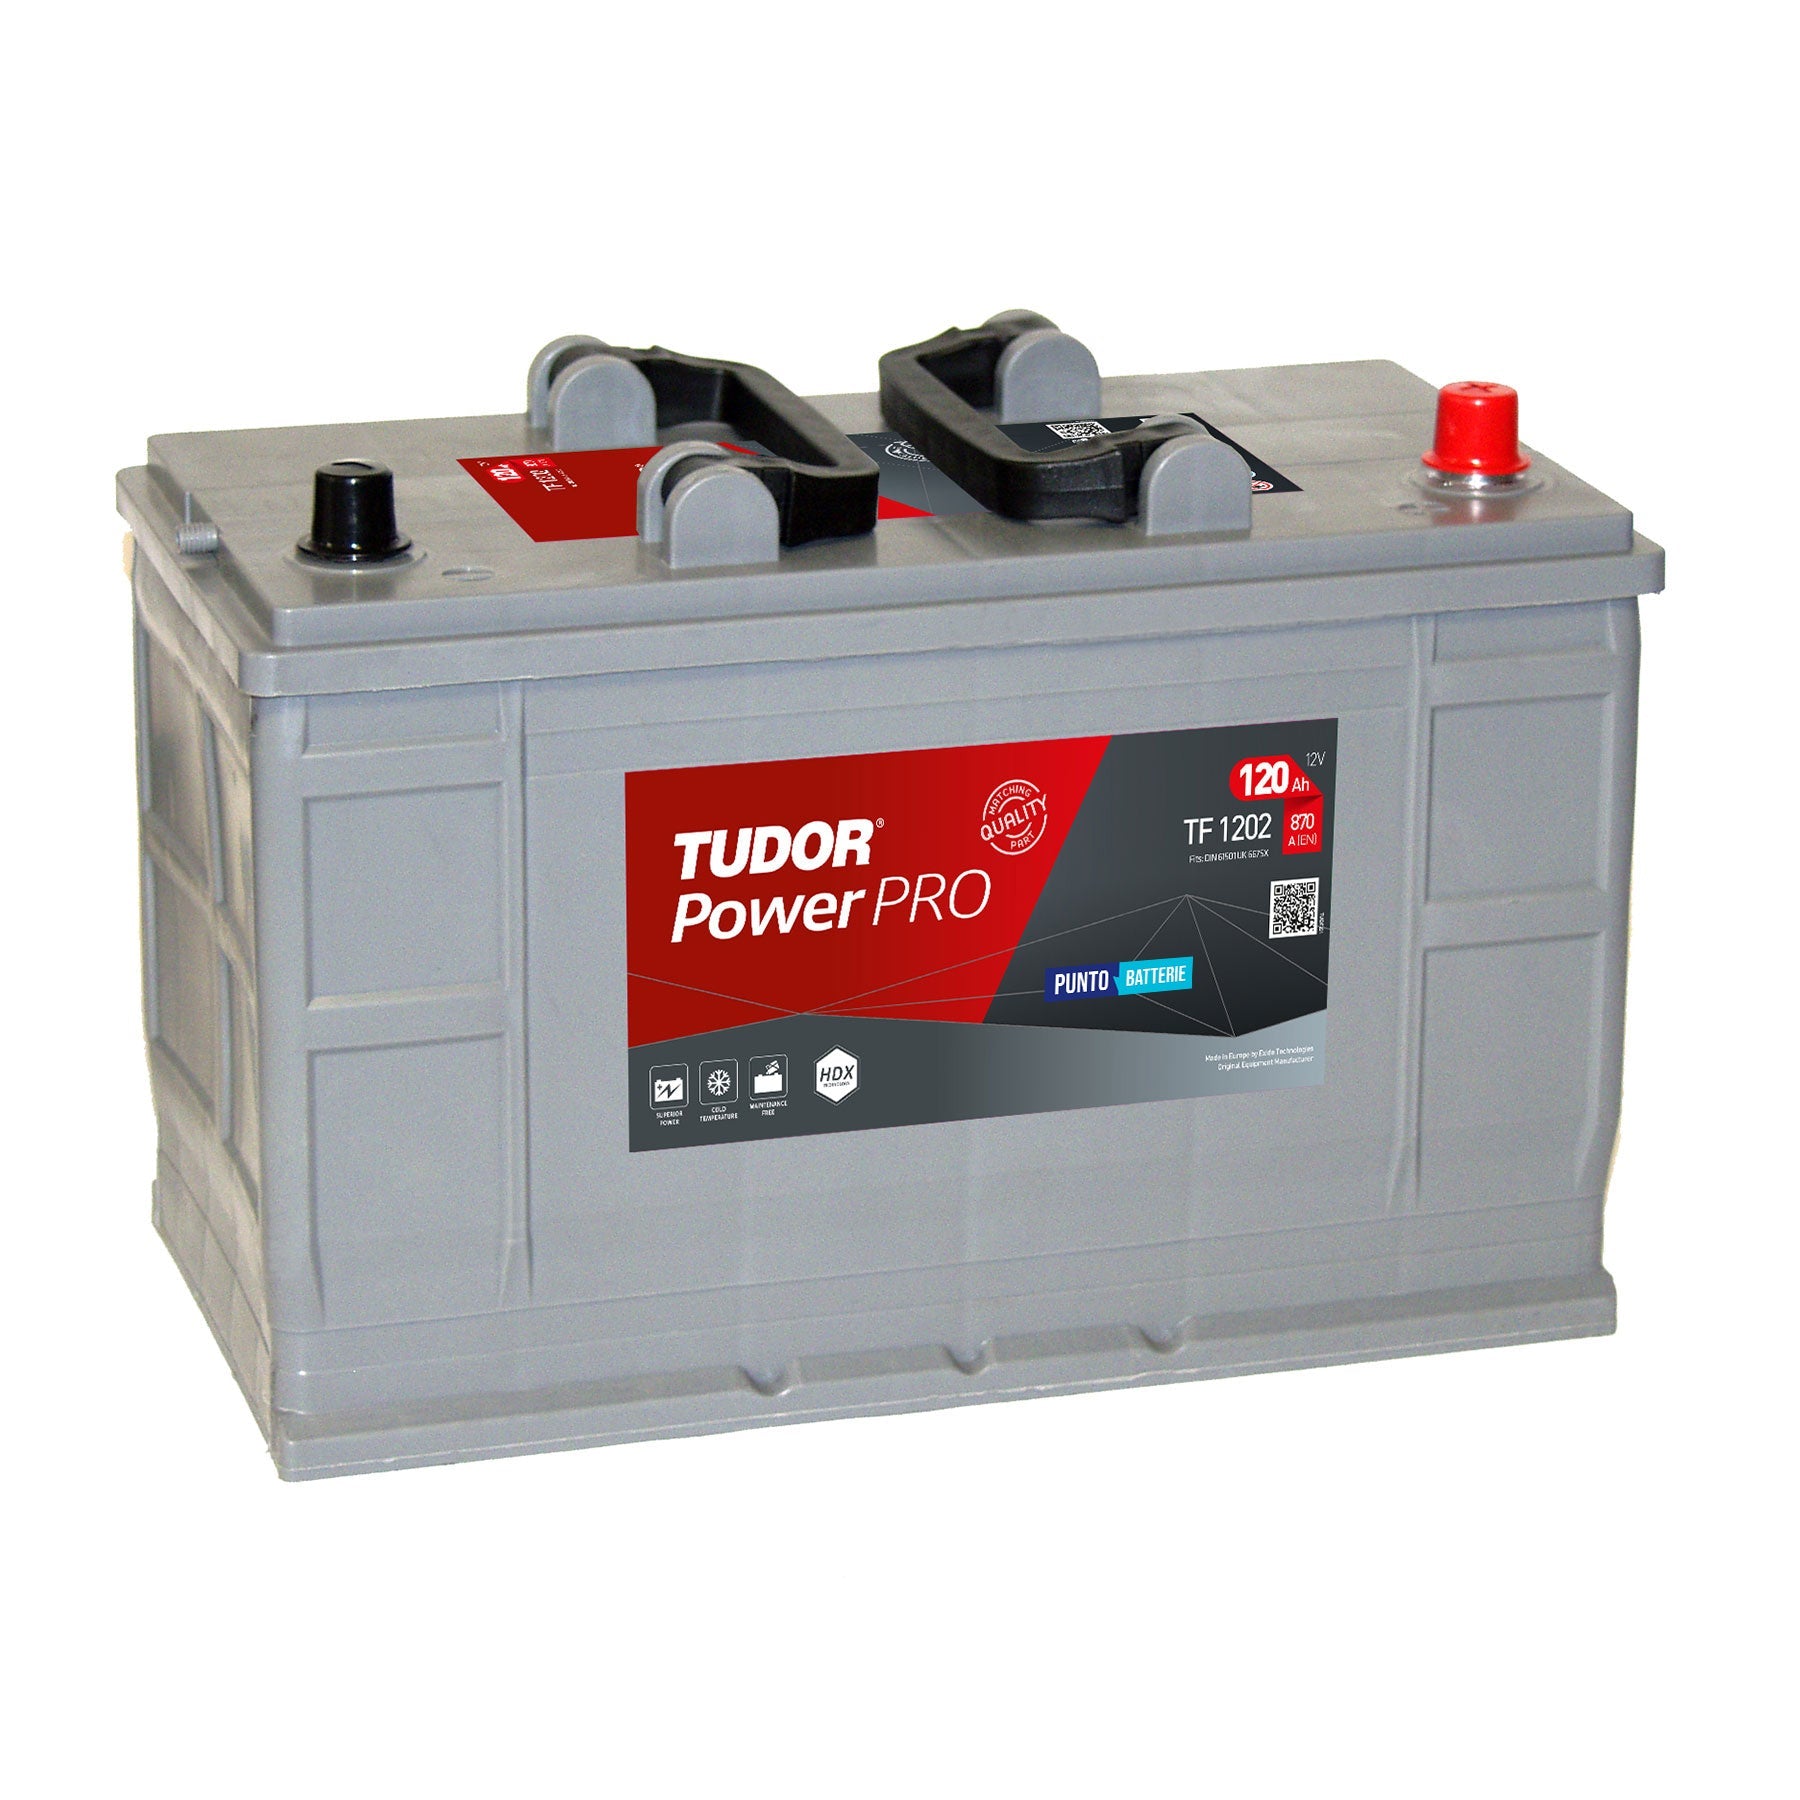 Batterie Trattorino Tagliaerba - Puntobatterie